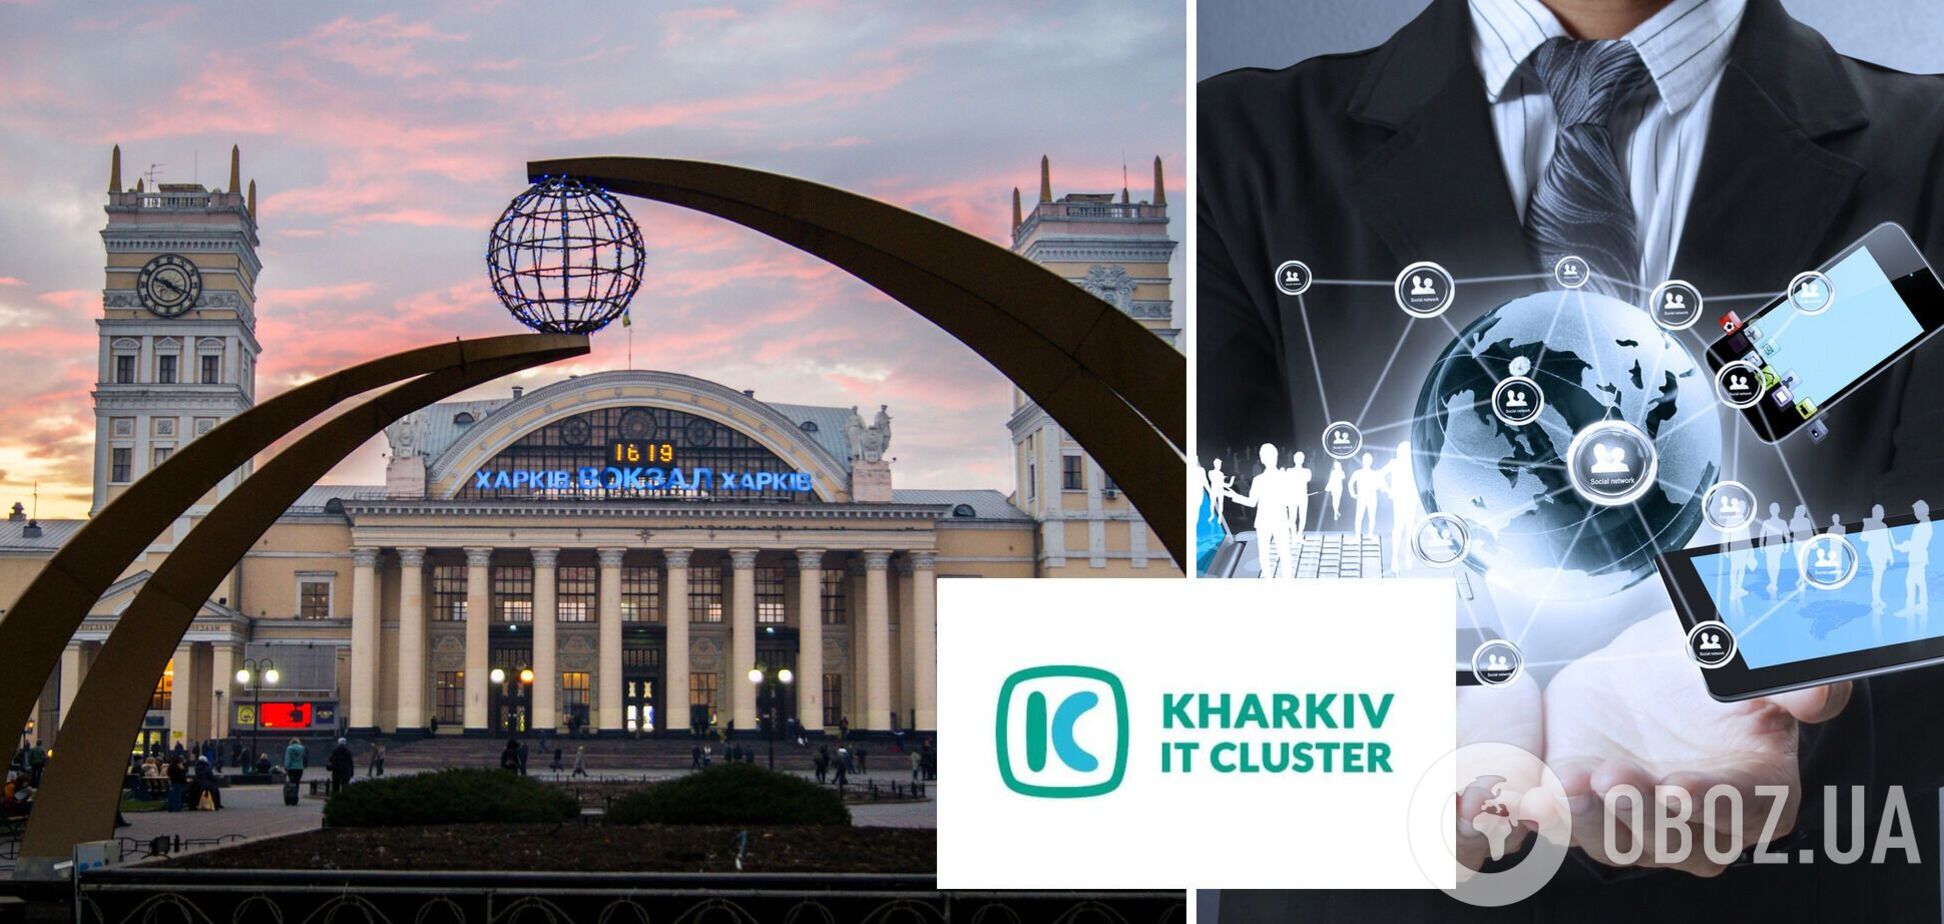 Харьков вышел на уровень ведущей ІТ-площадки в Восточной Европе